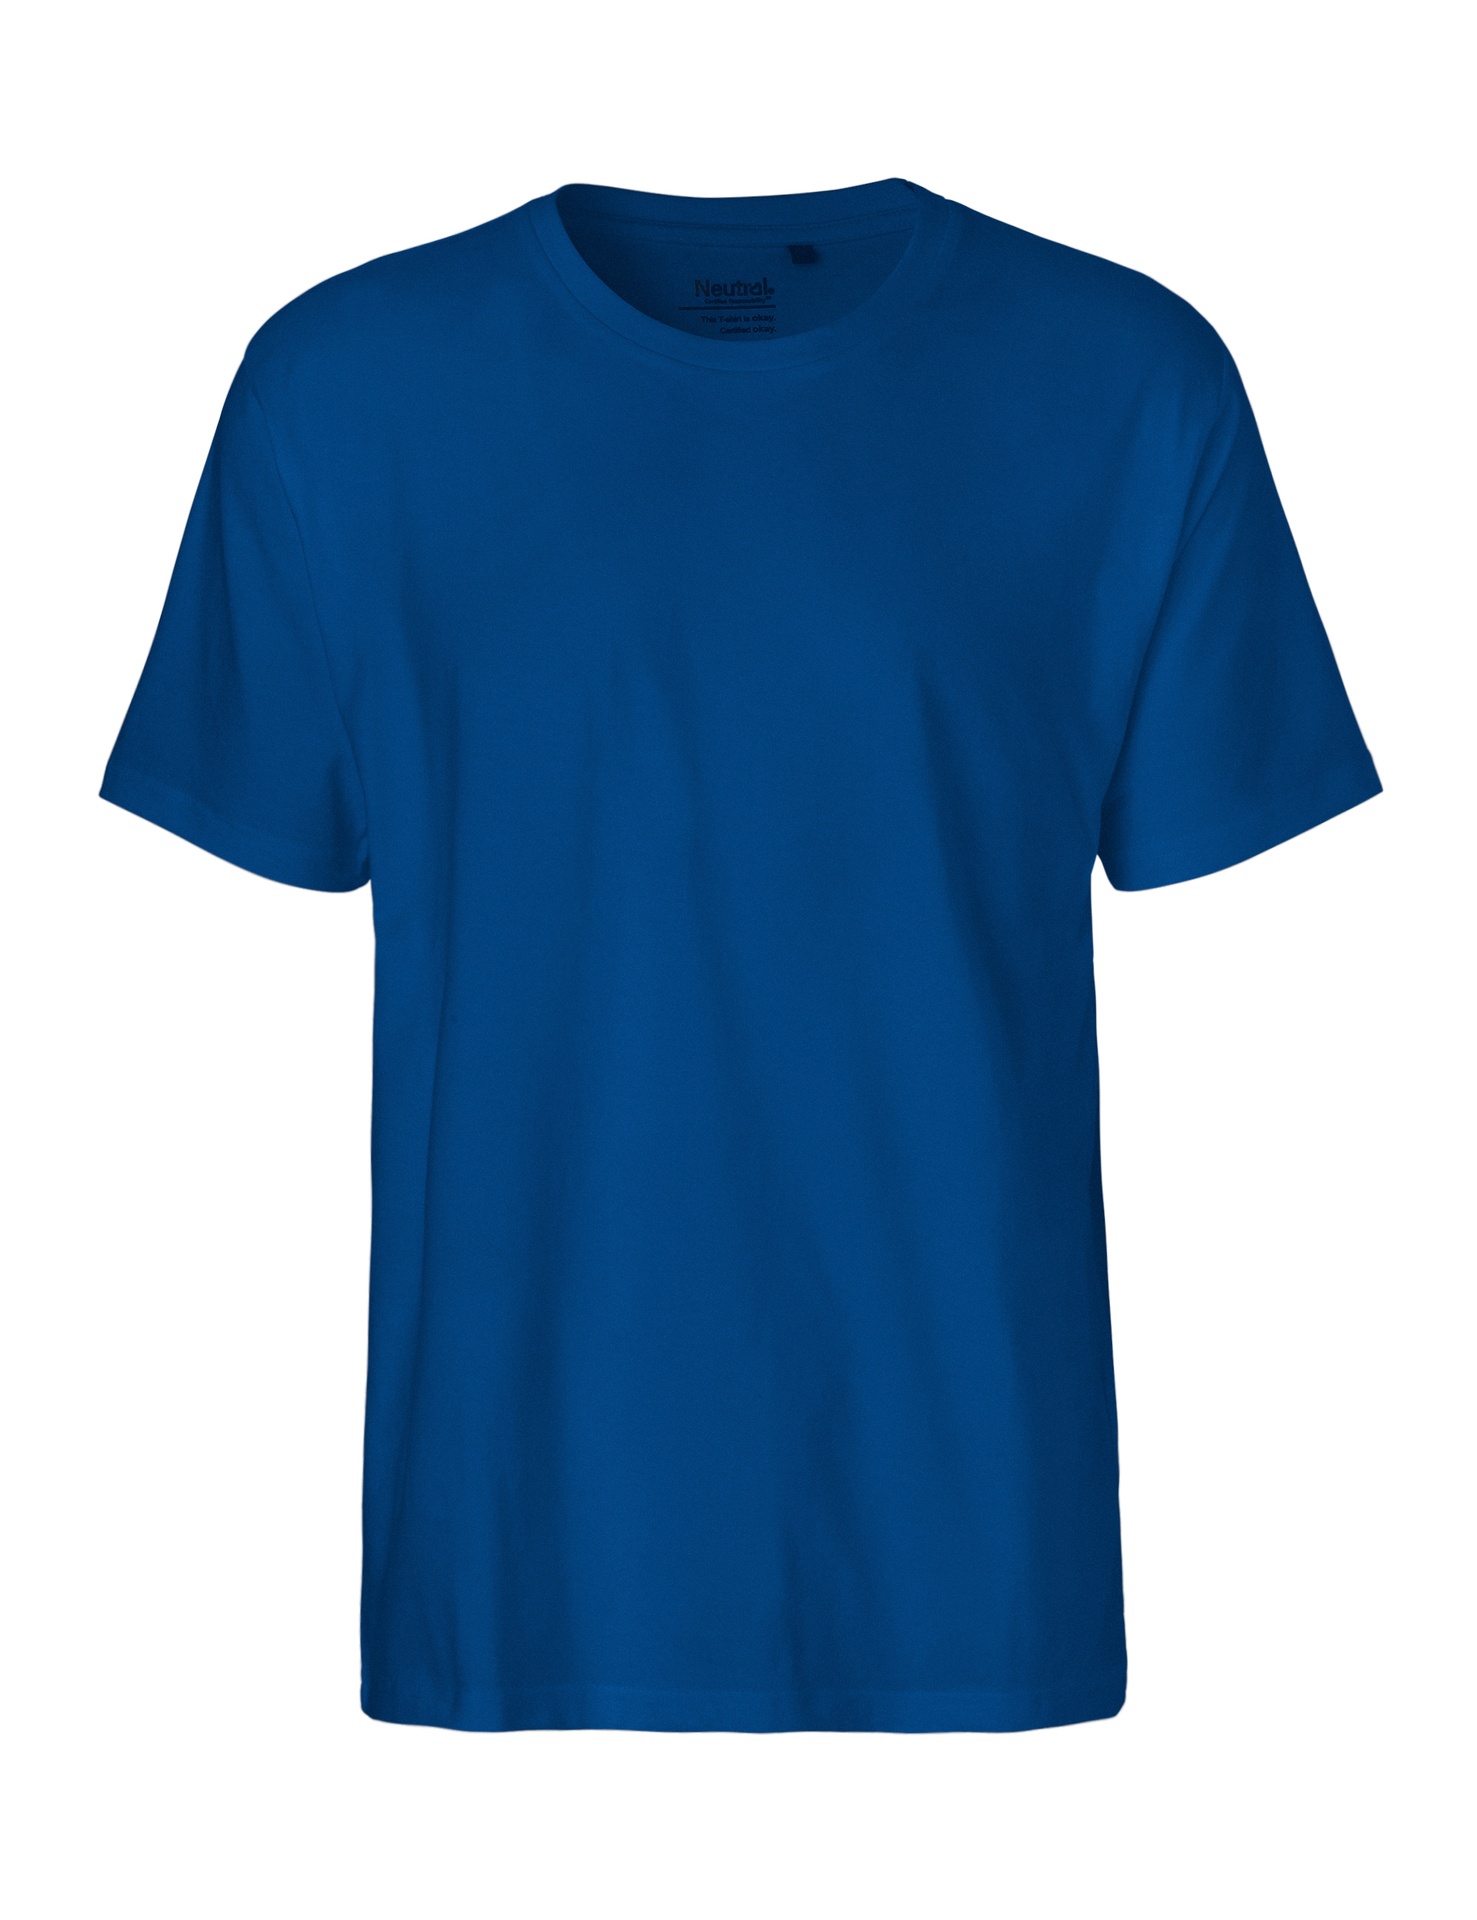 [PR/01354] Mens Classic T-Shirt (Royal 51, 2XL)